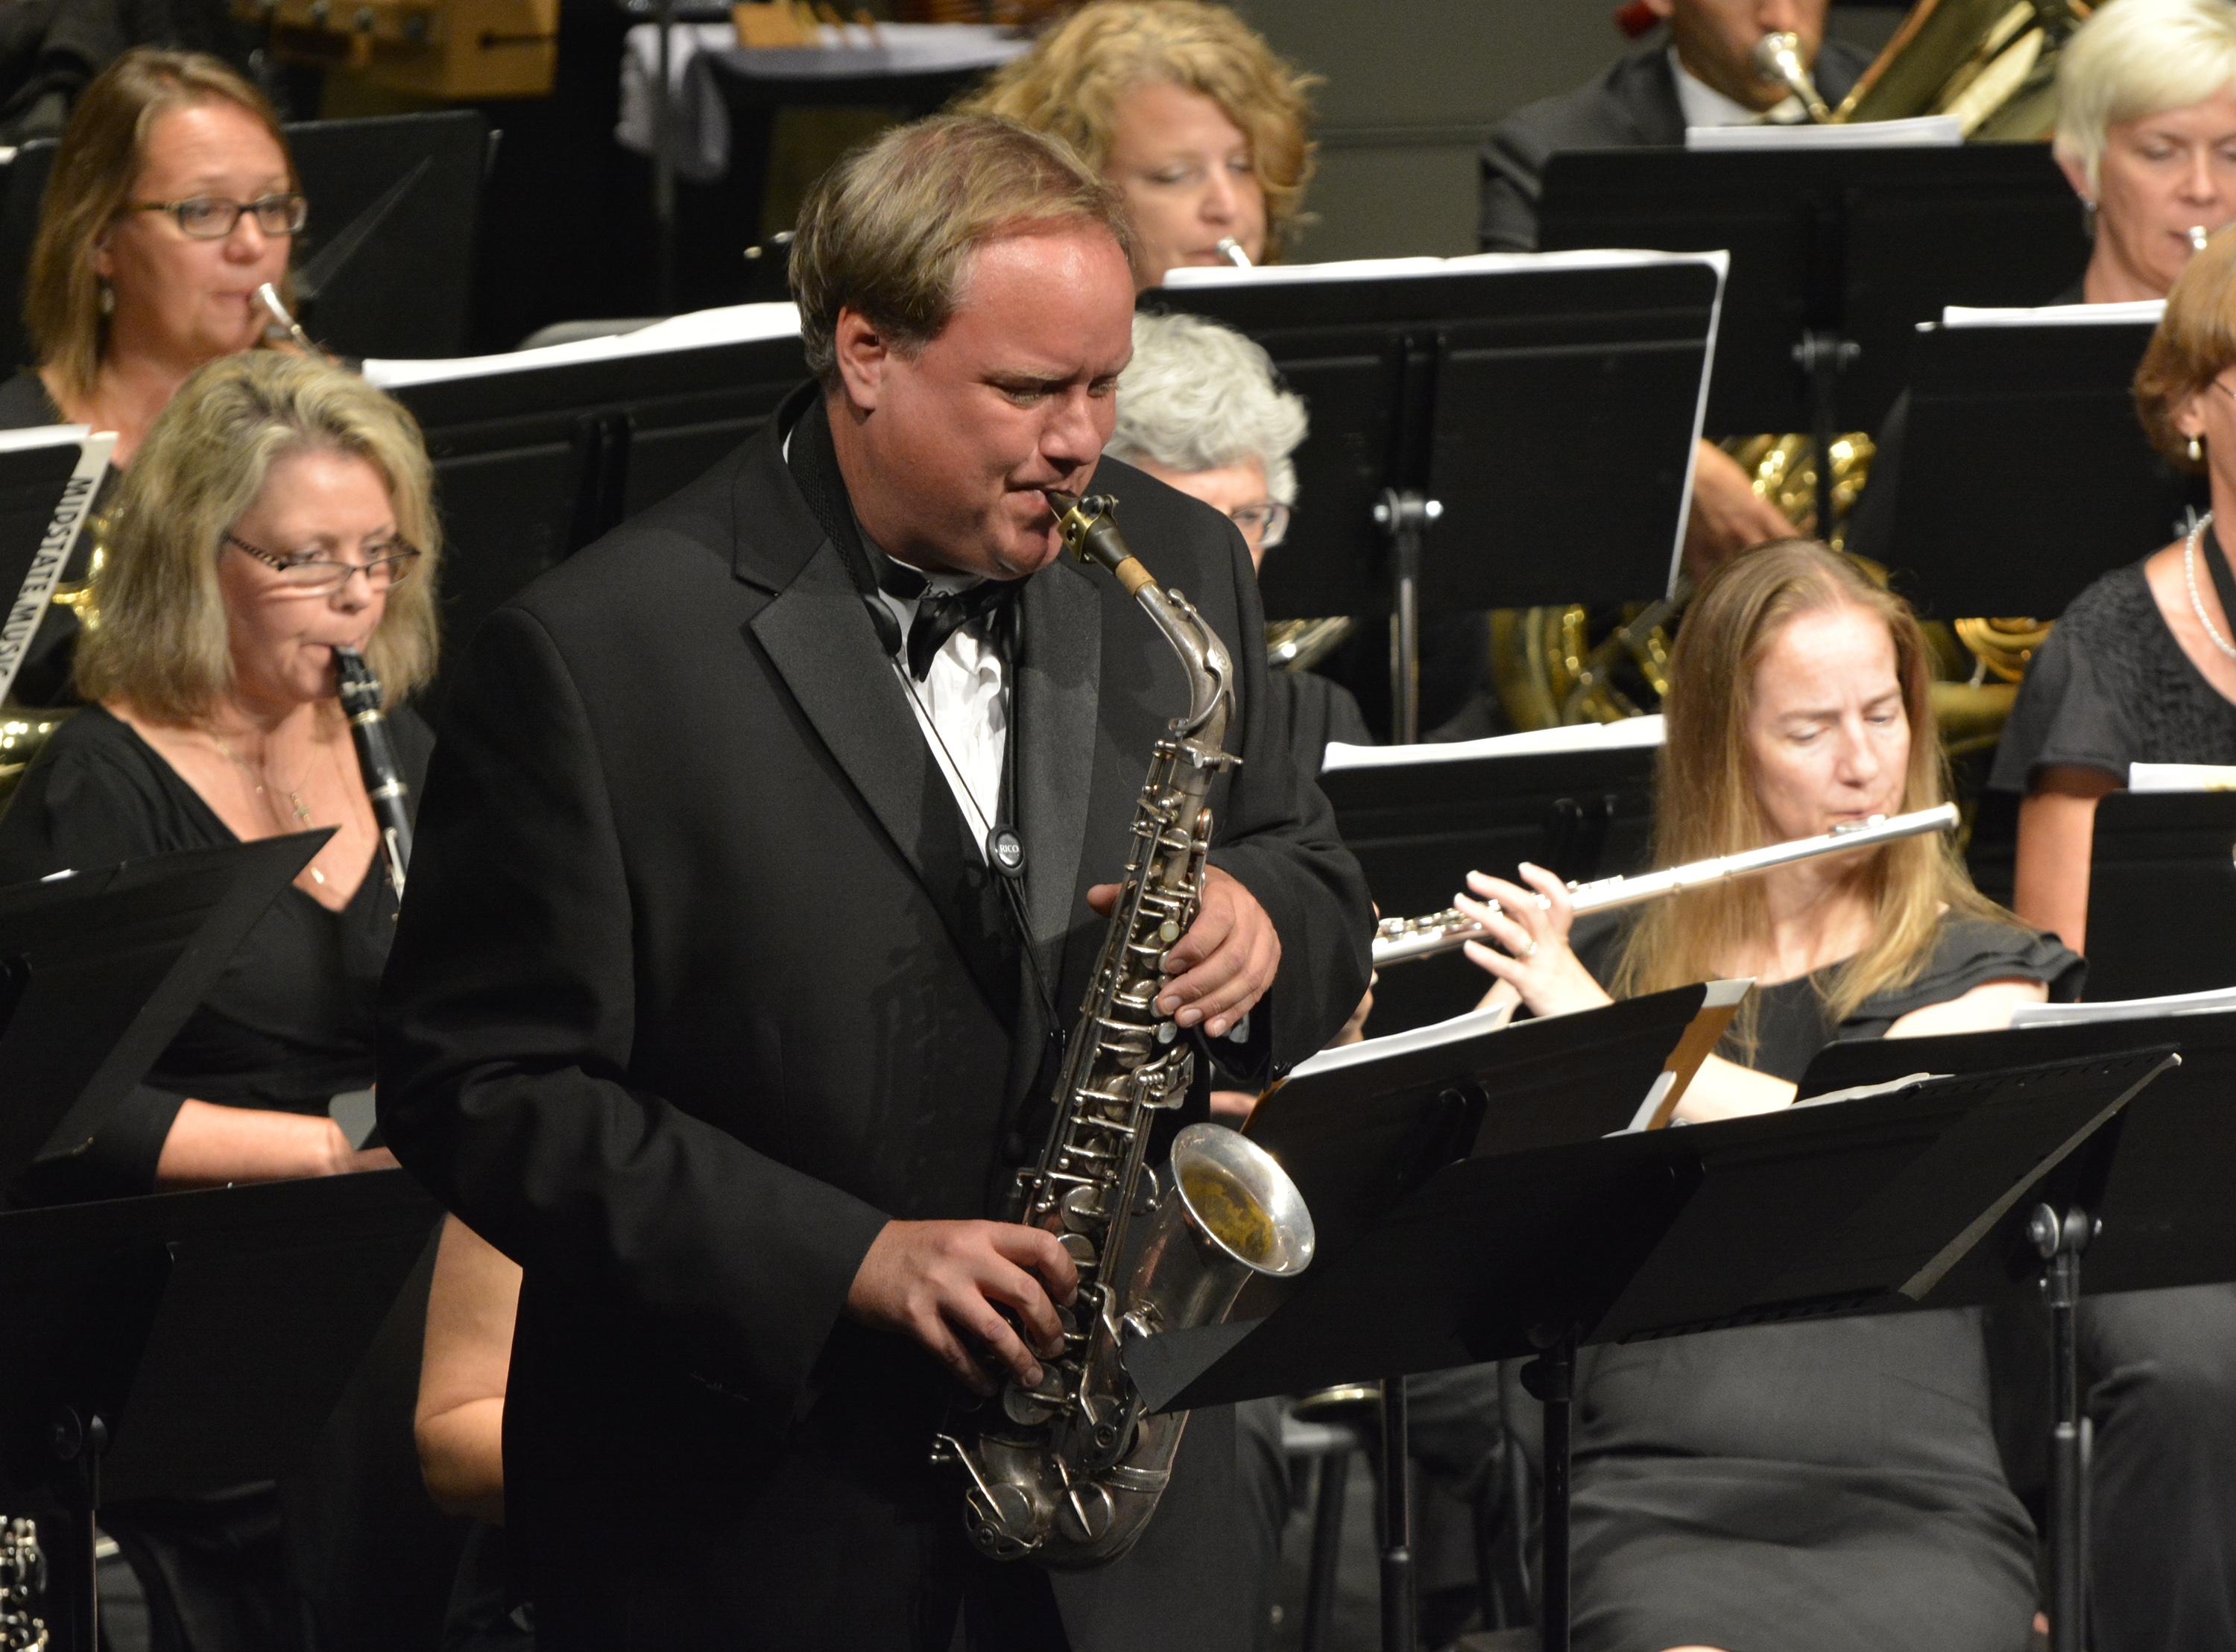 Trevor Jorgensen plays saxophone